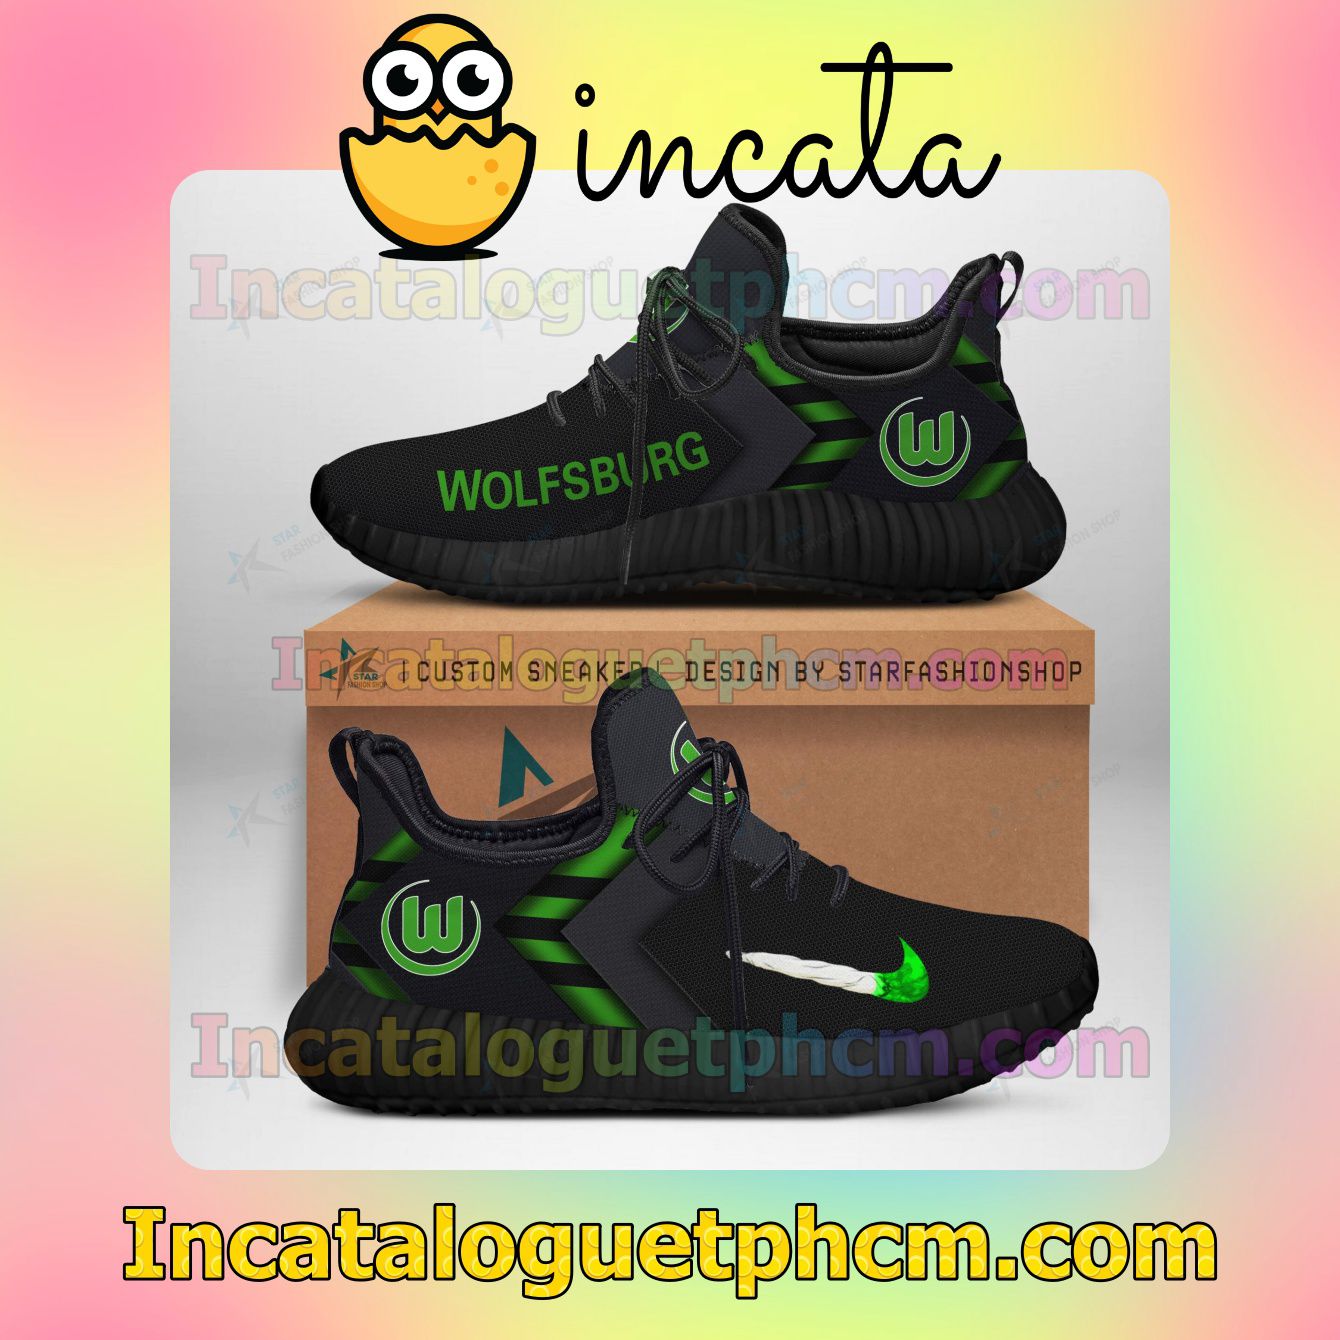 Best VfL Wolfsburg Ultraboost Yeezy Shoes Sneakers